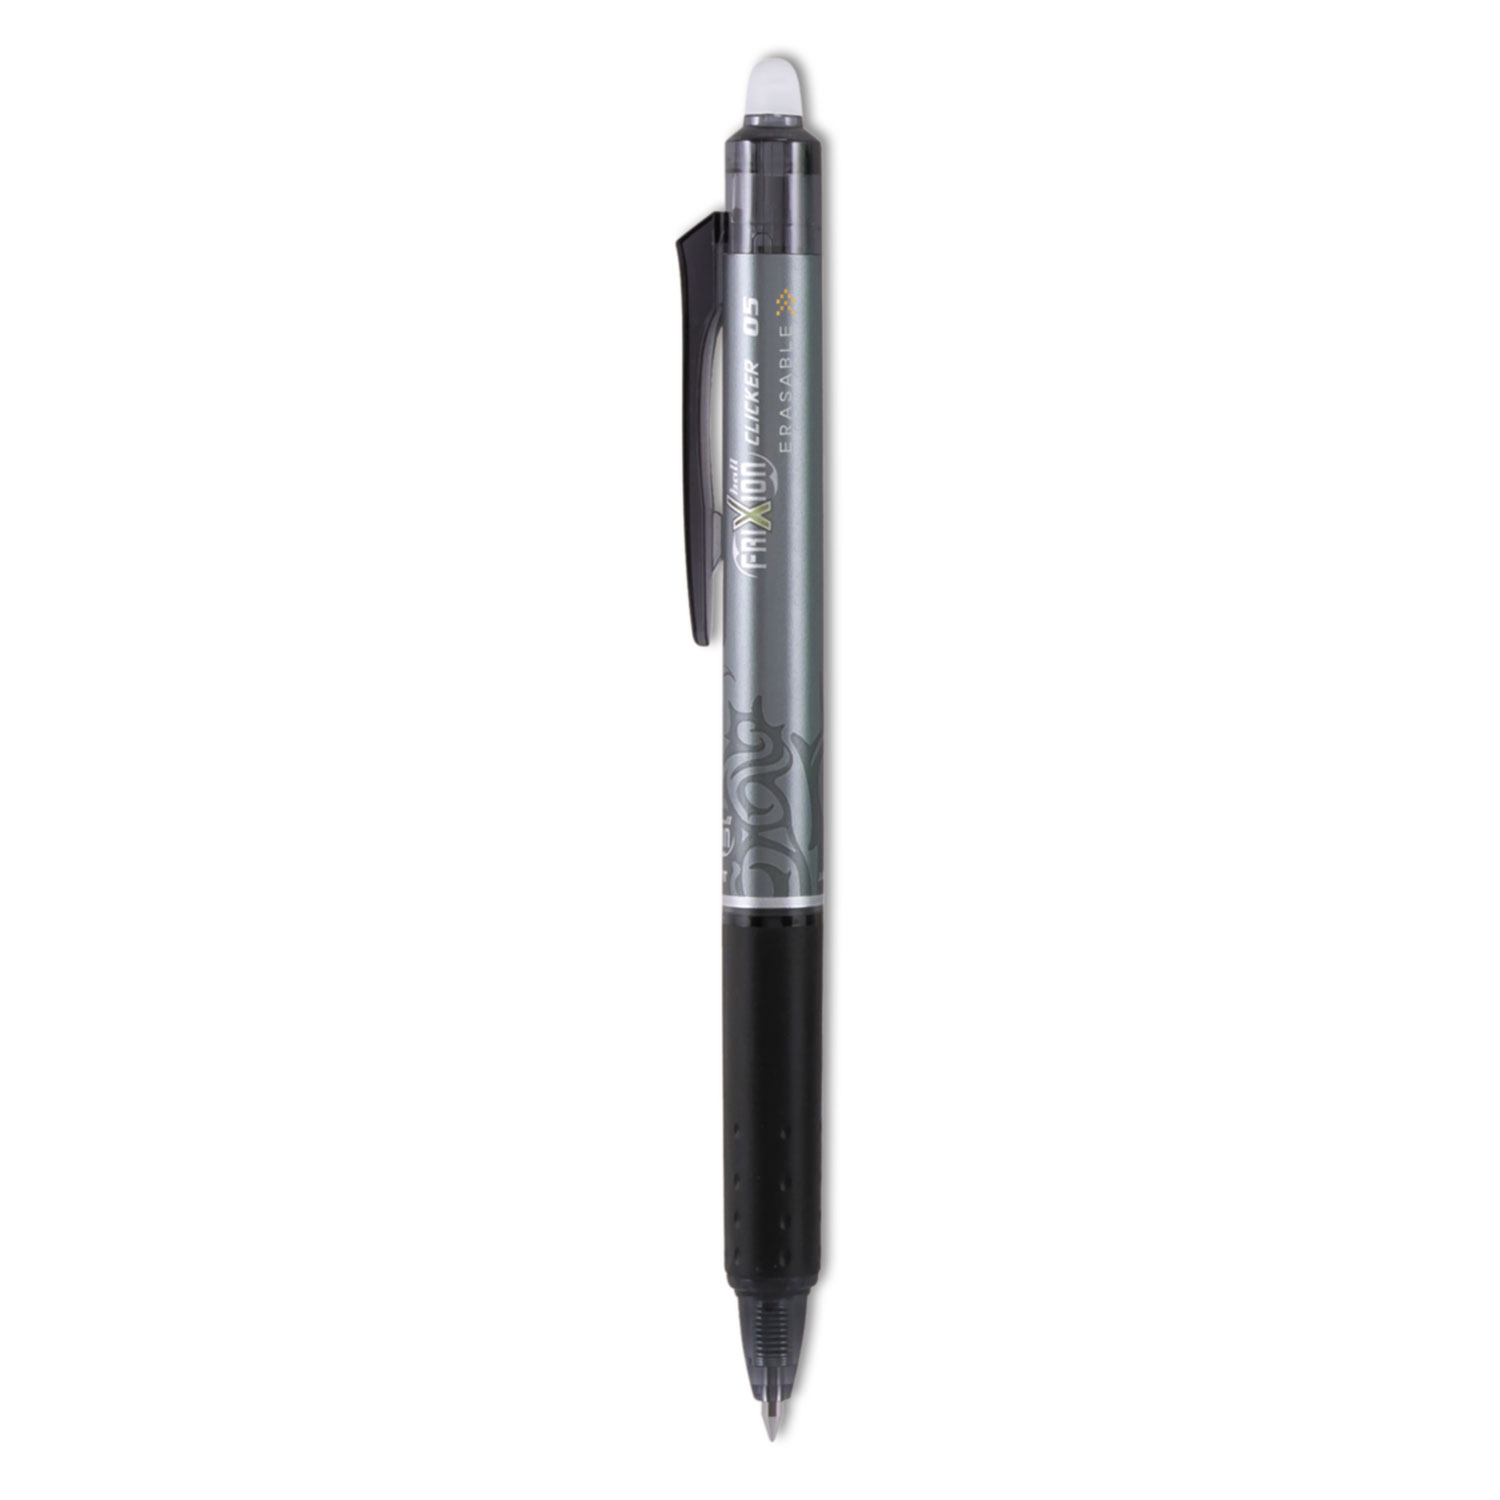  Pilot 32520 FriXion Clicker Erasable Retractable Gel Pen, 0.5mm, Black Ink/Barrel, Dozen (PIL32520) 